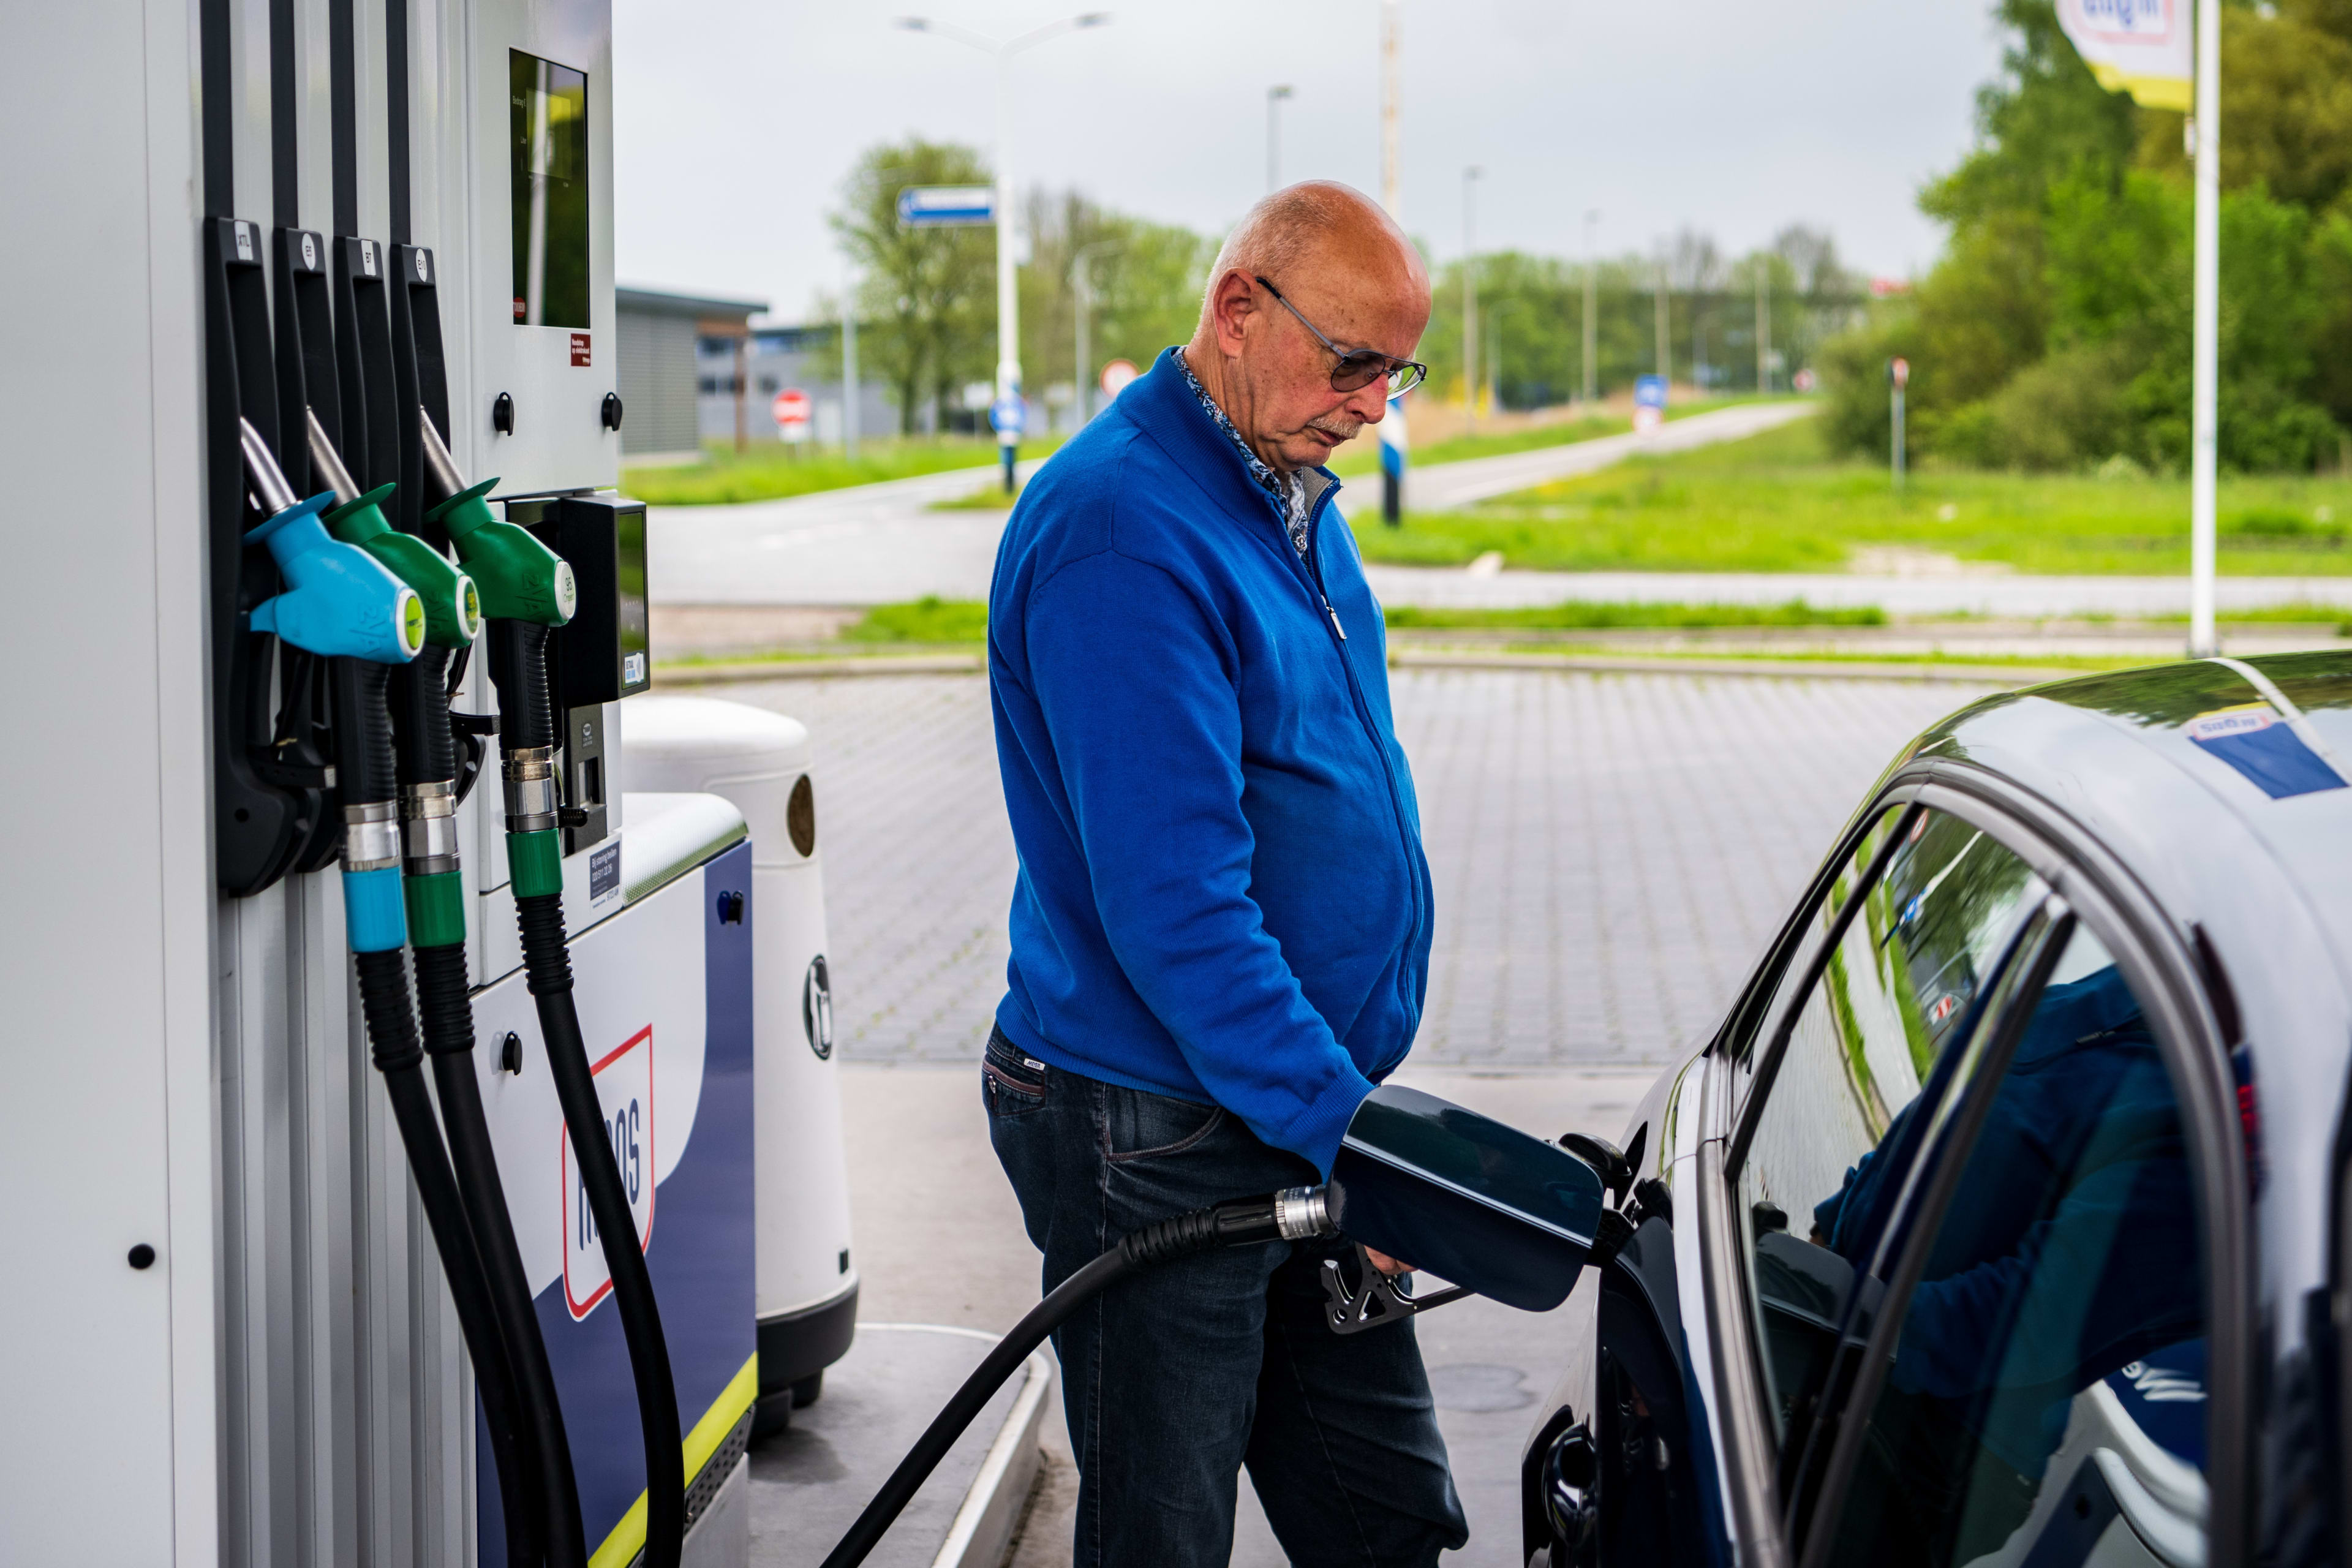 'Benzineprijs op laagste niveau sinds accijnsverhoging juli'